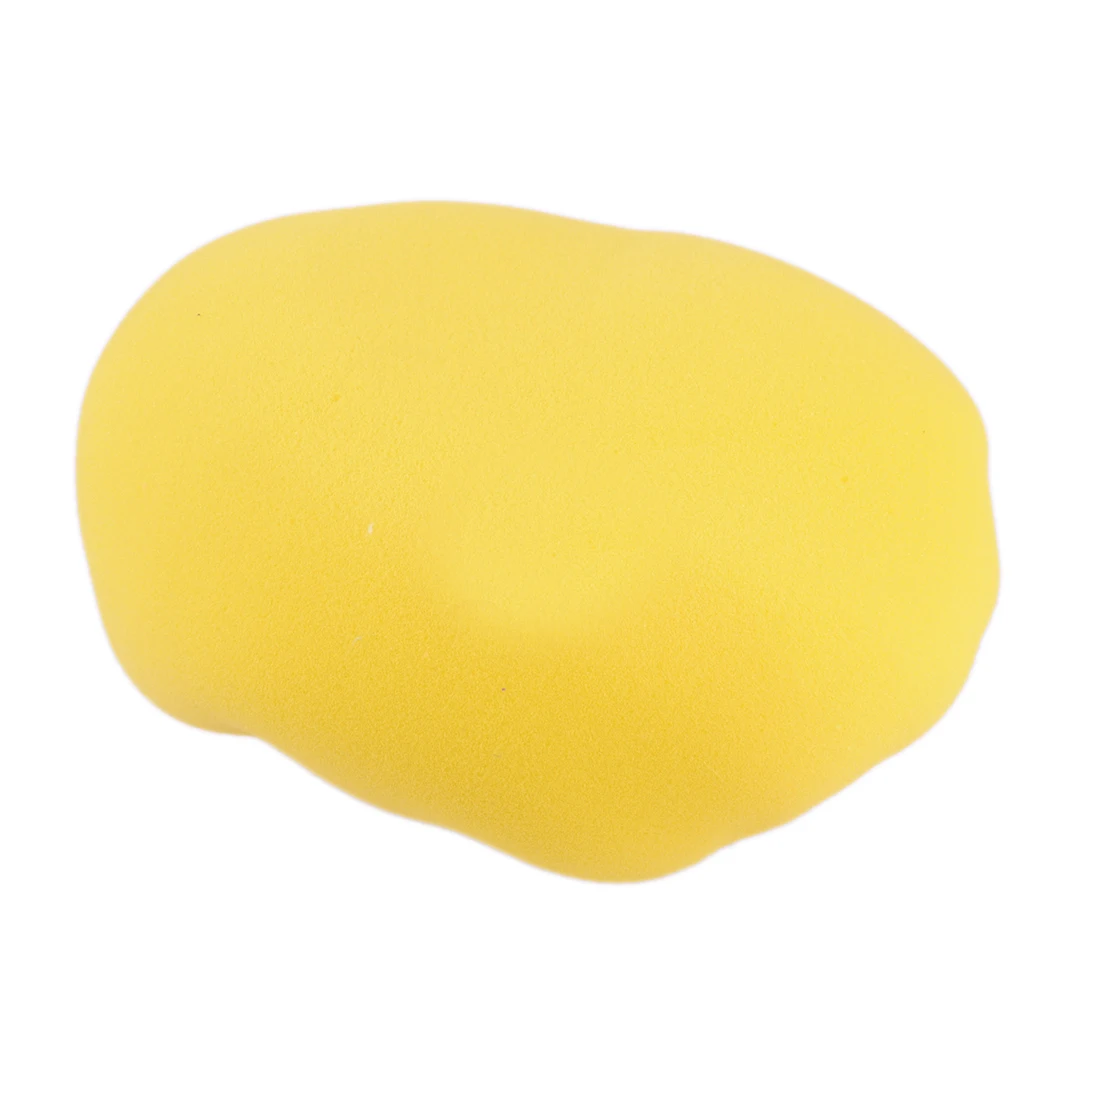 

Универсальная полировальная Накладка для полировки автомобиля, Накладка для полировки воском, желтая губка для чехла 9-10 дюймов